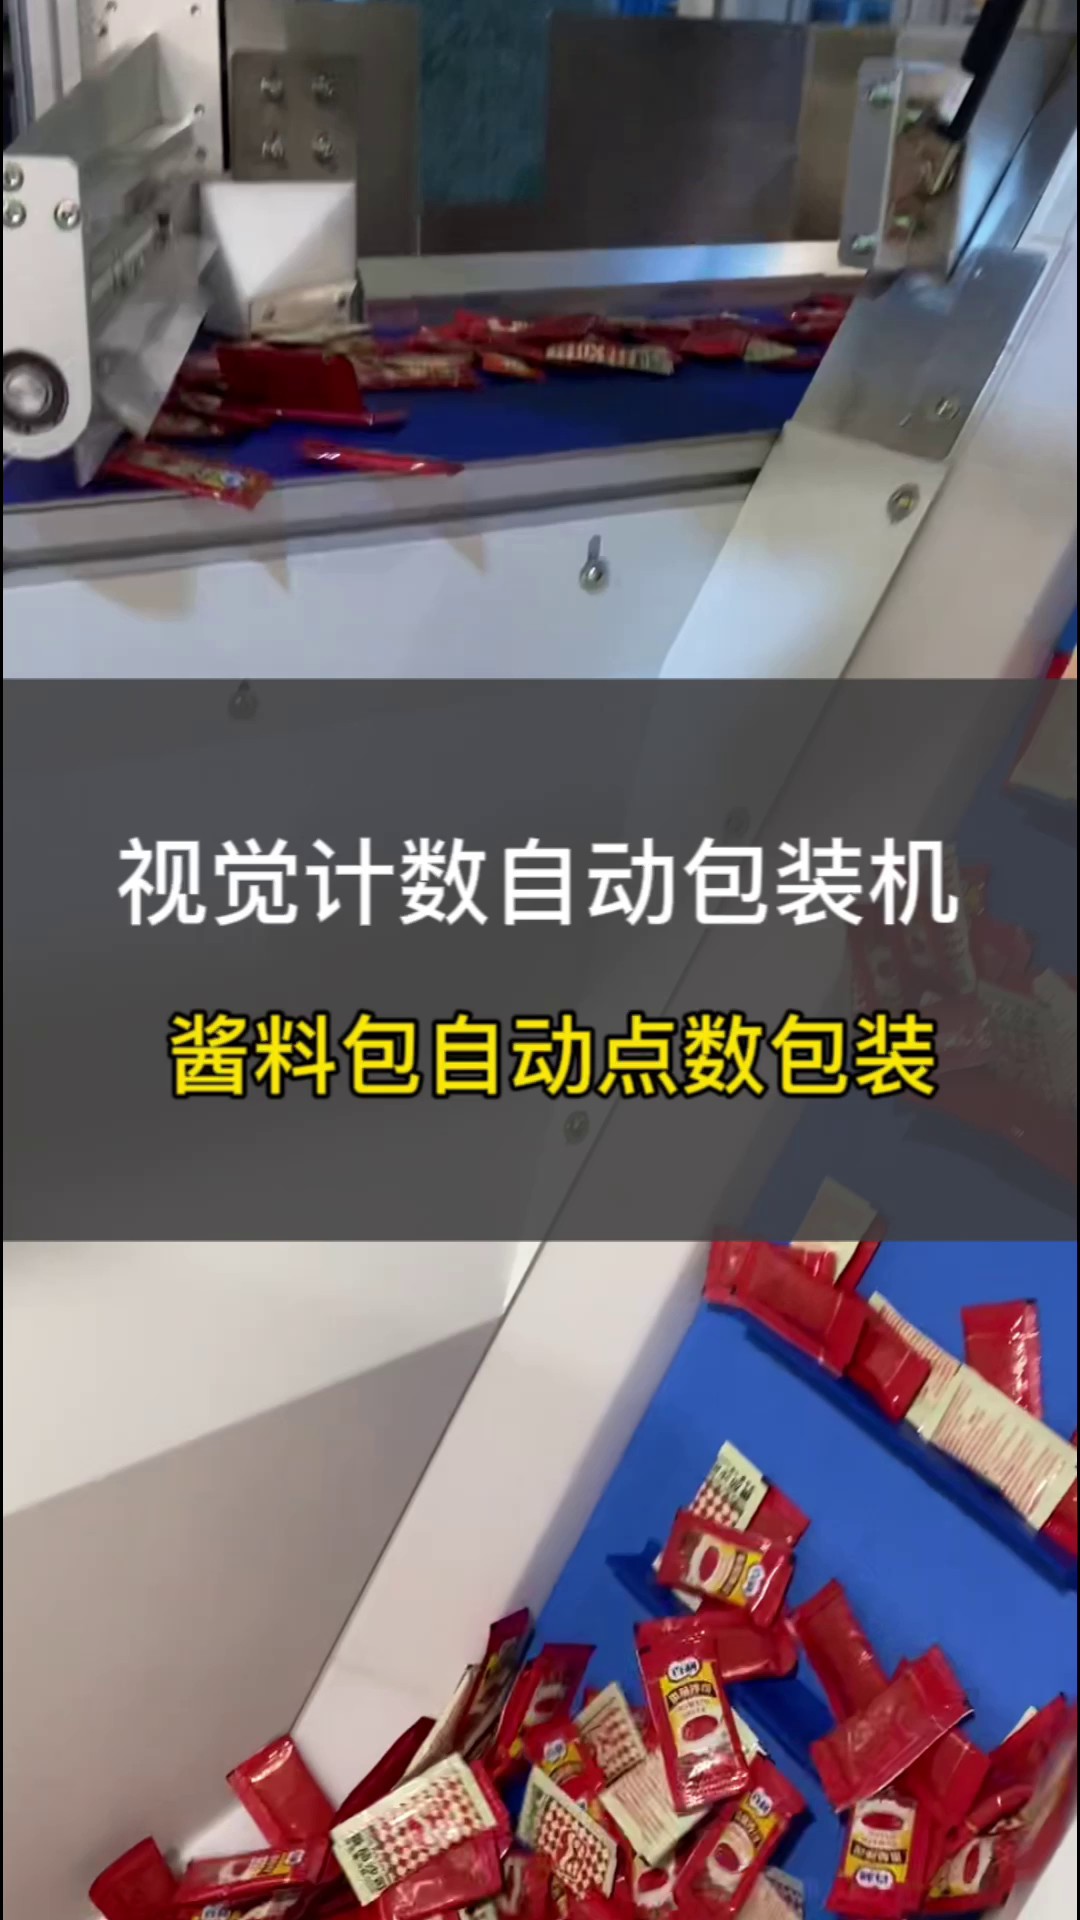 上海粉末冶金视觉计数包装机联系人,视觉计数包装机